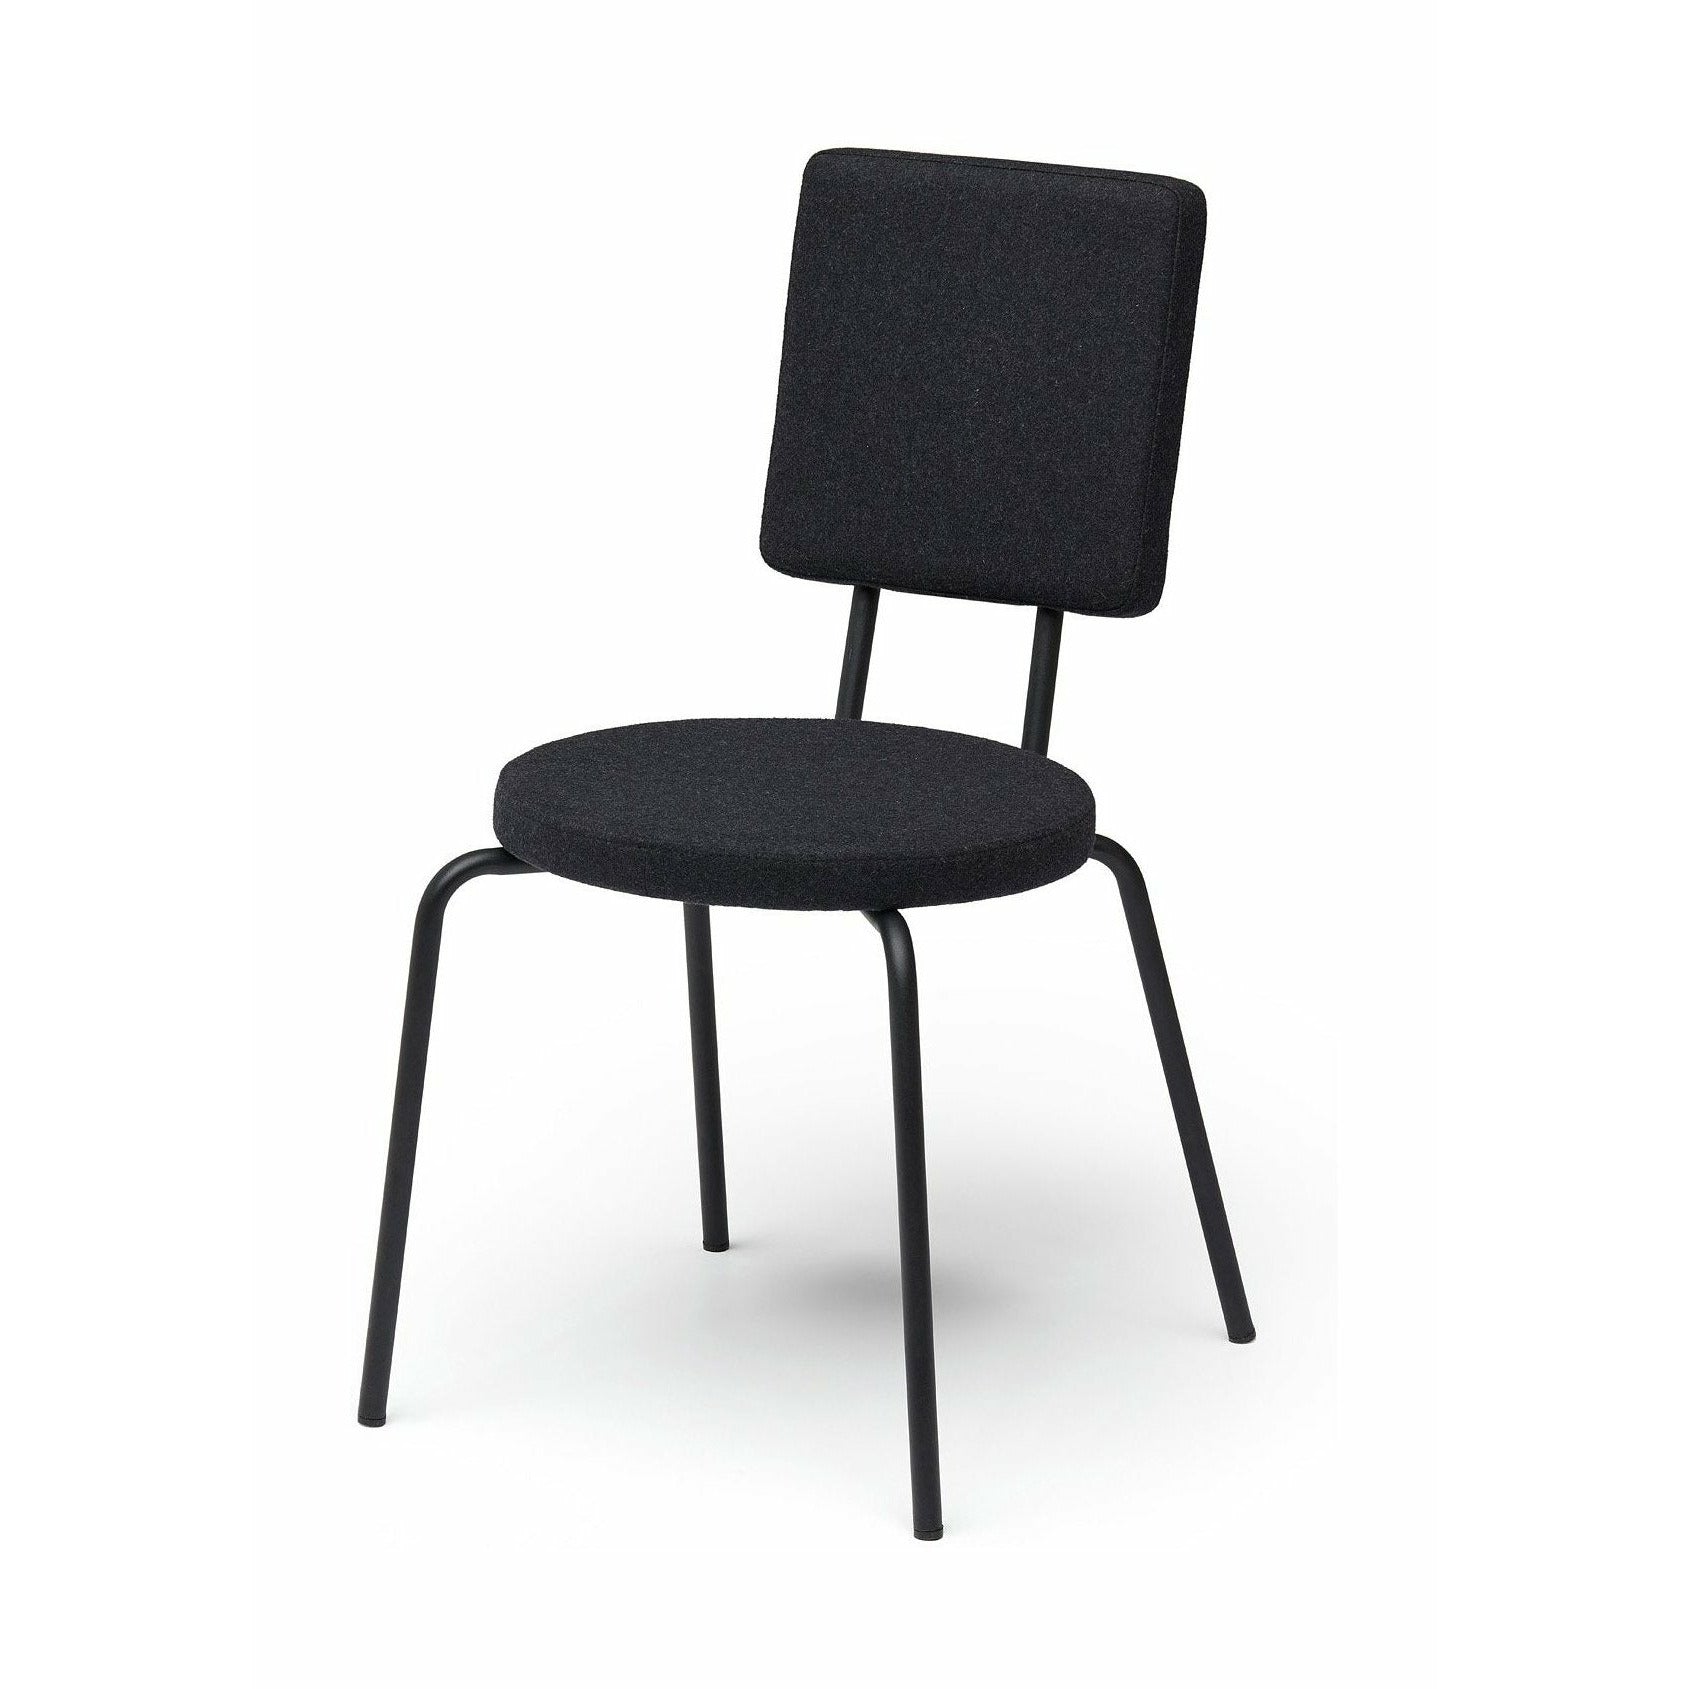 Puik Option chaise siège rond / dossier carré, noir